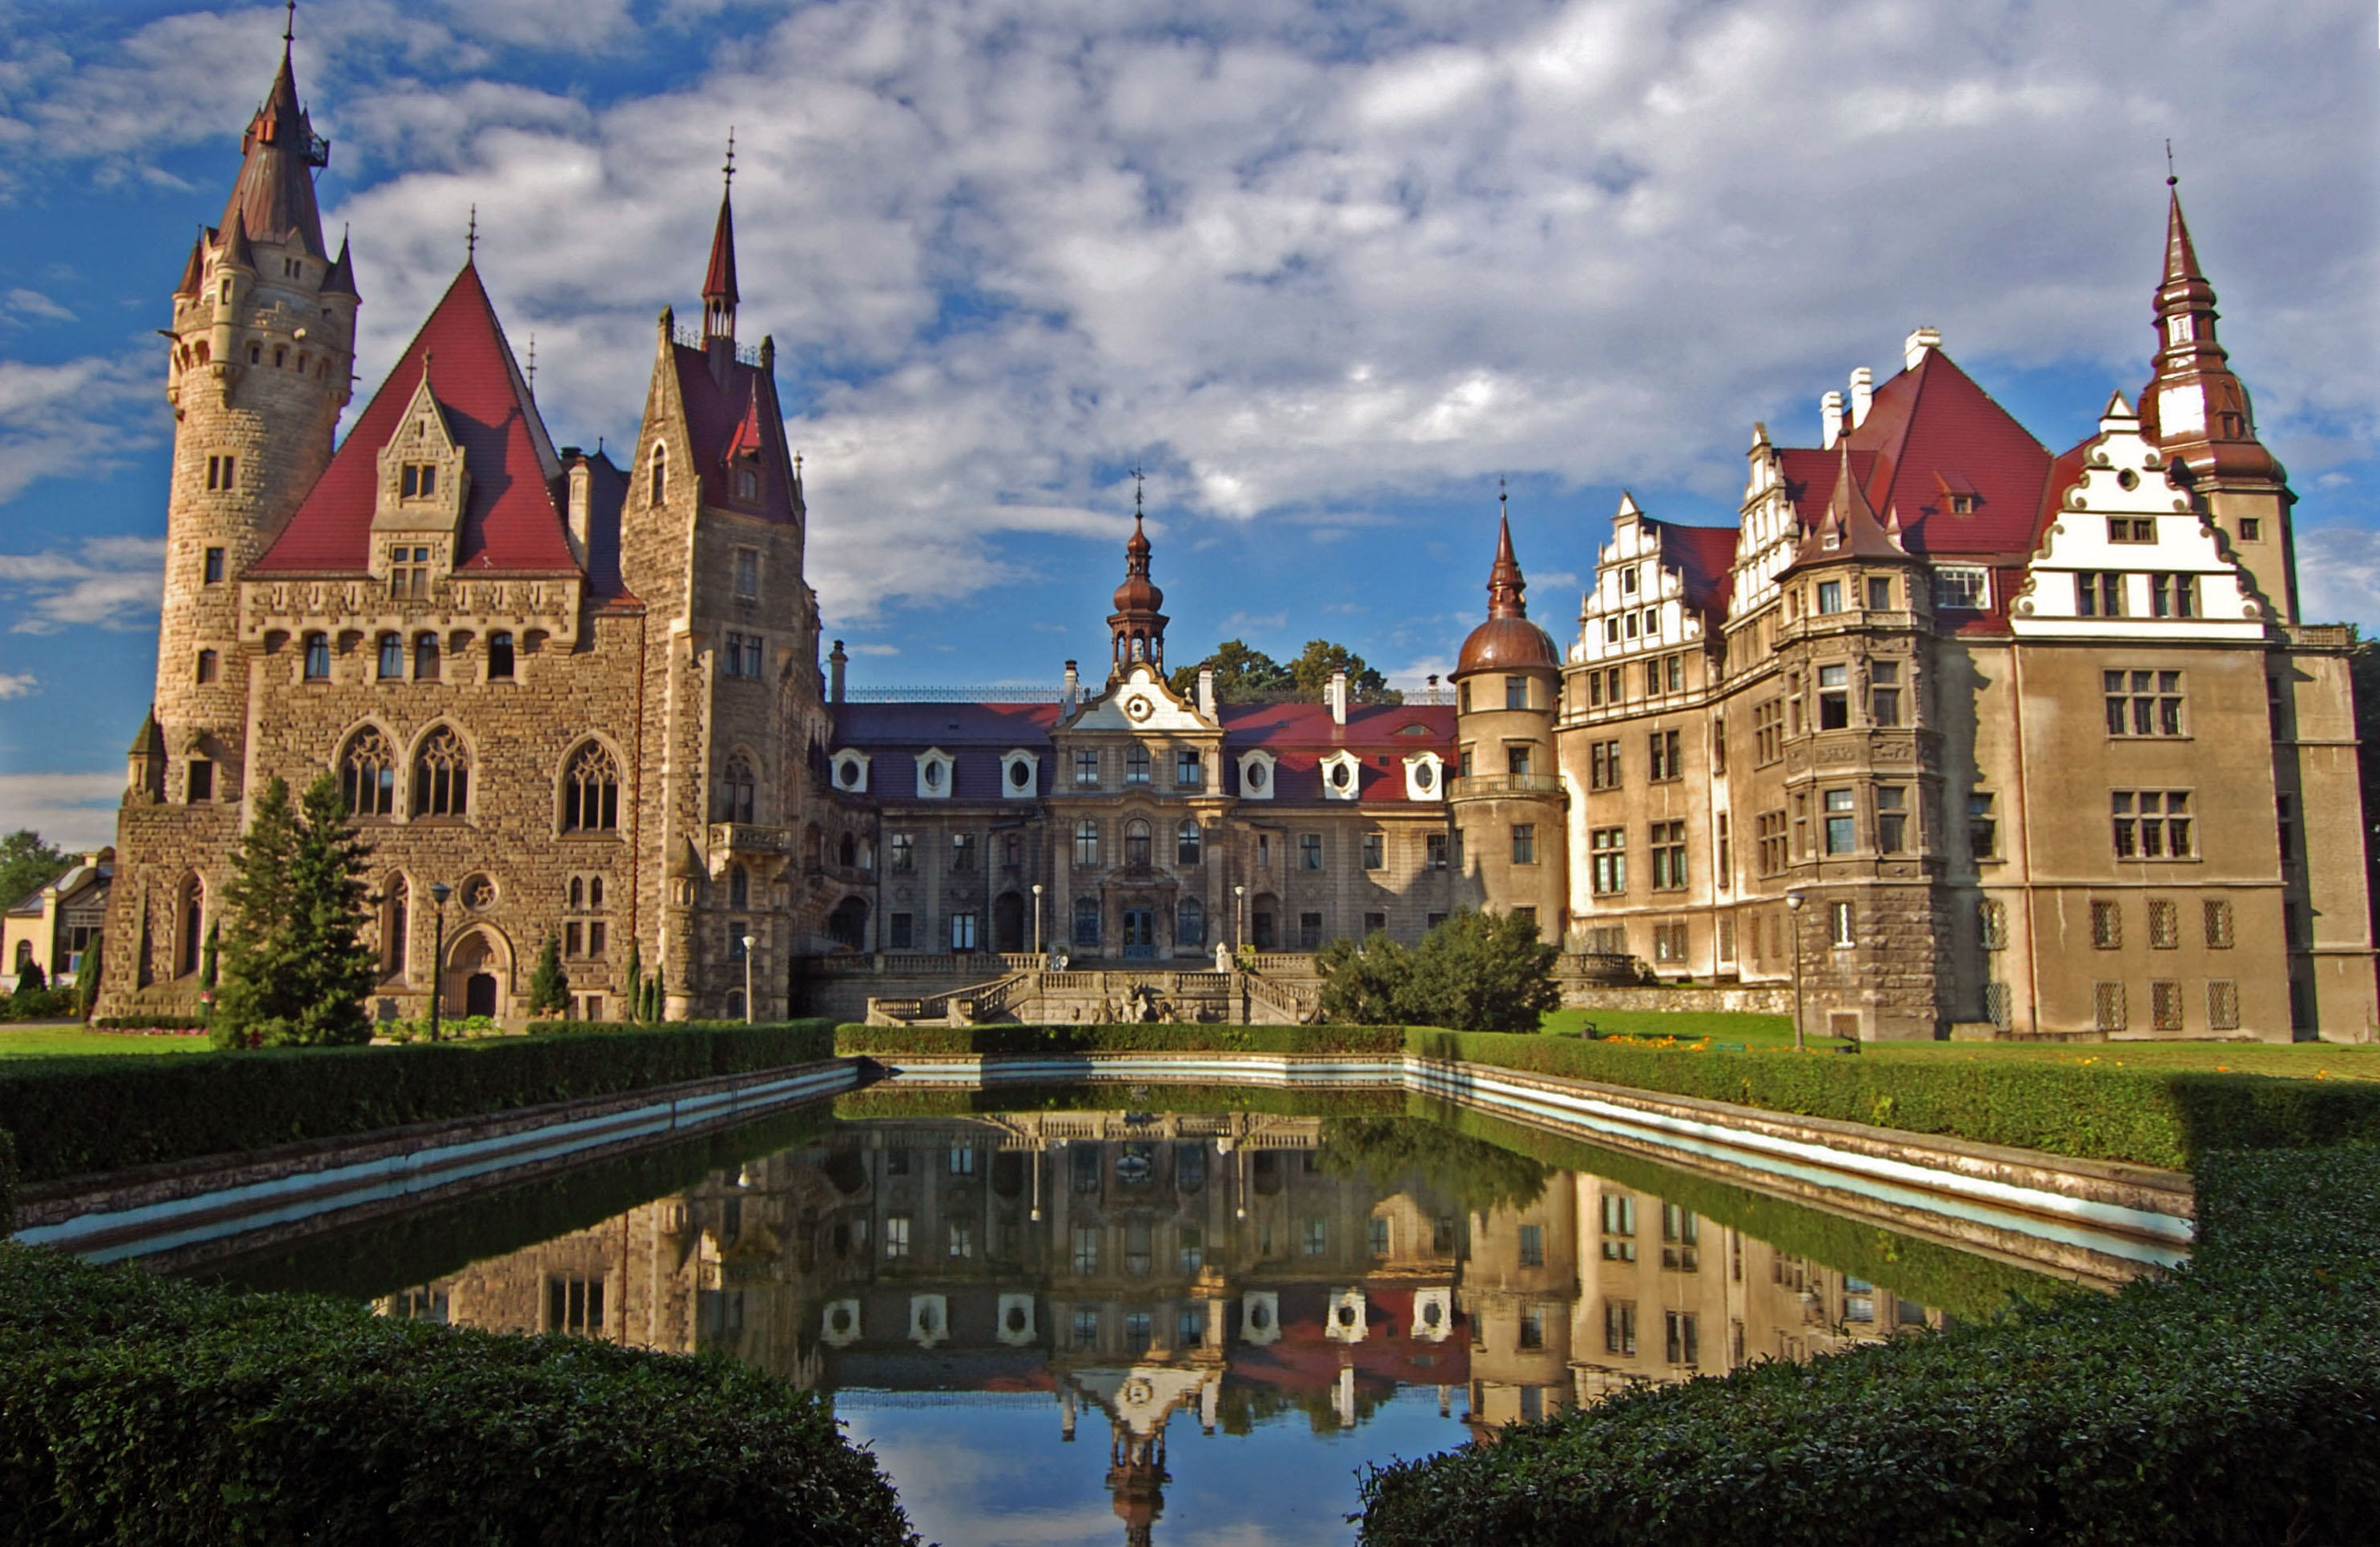 Moszna Castle #19